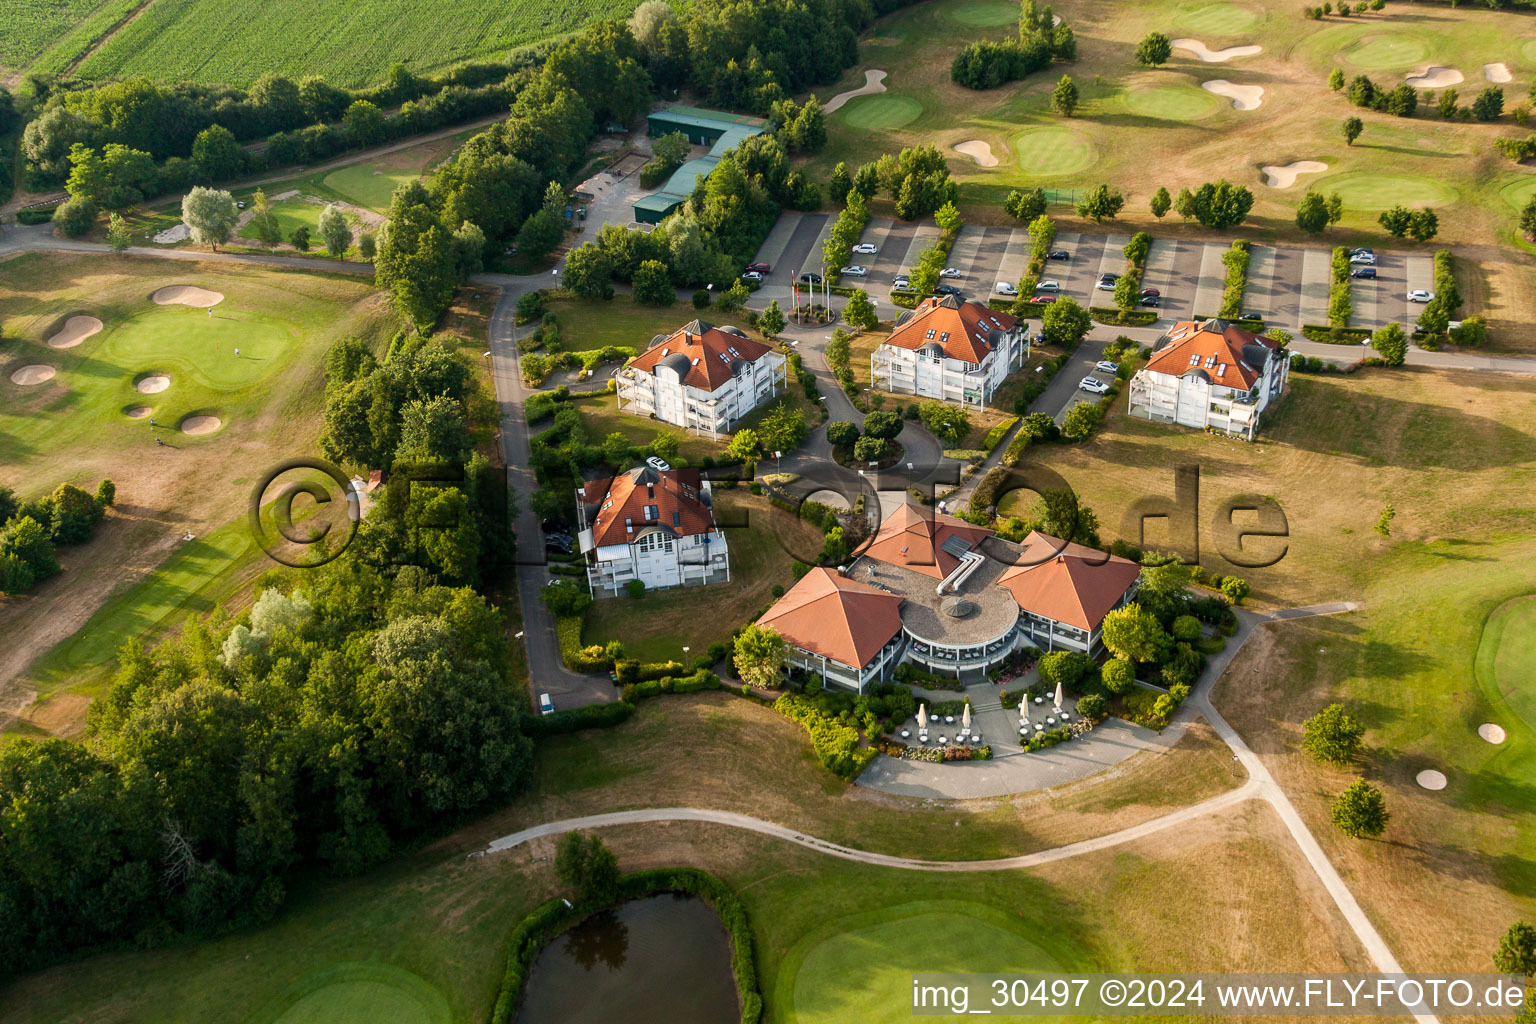 Luftbild von Restaurant des Golfclub Soufflenheim Baden-Baden in Soufflenheim in Grand Est im Bundesland Bas-Rhin, Frankreich